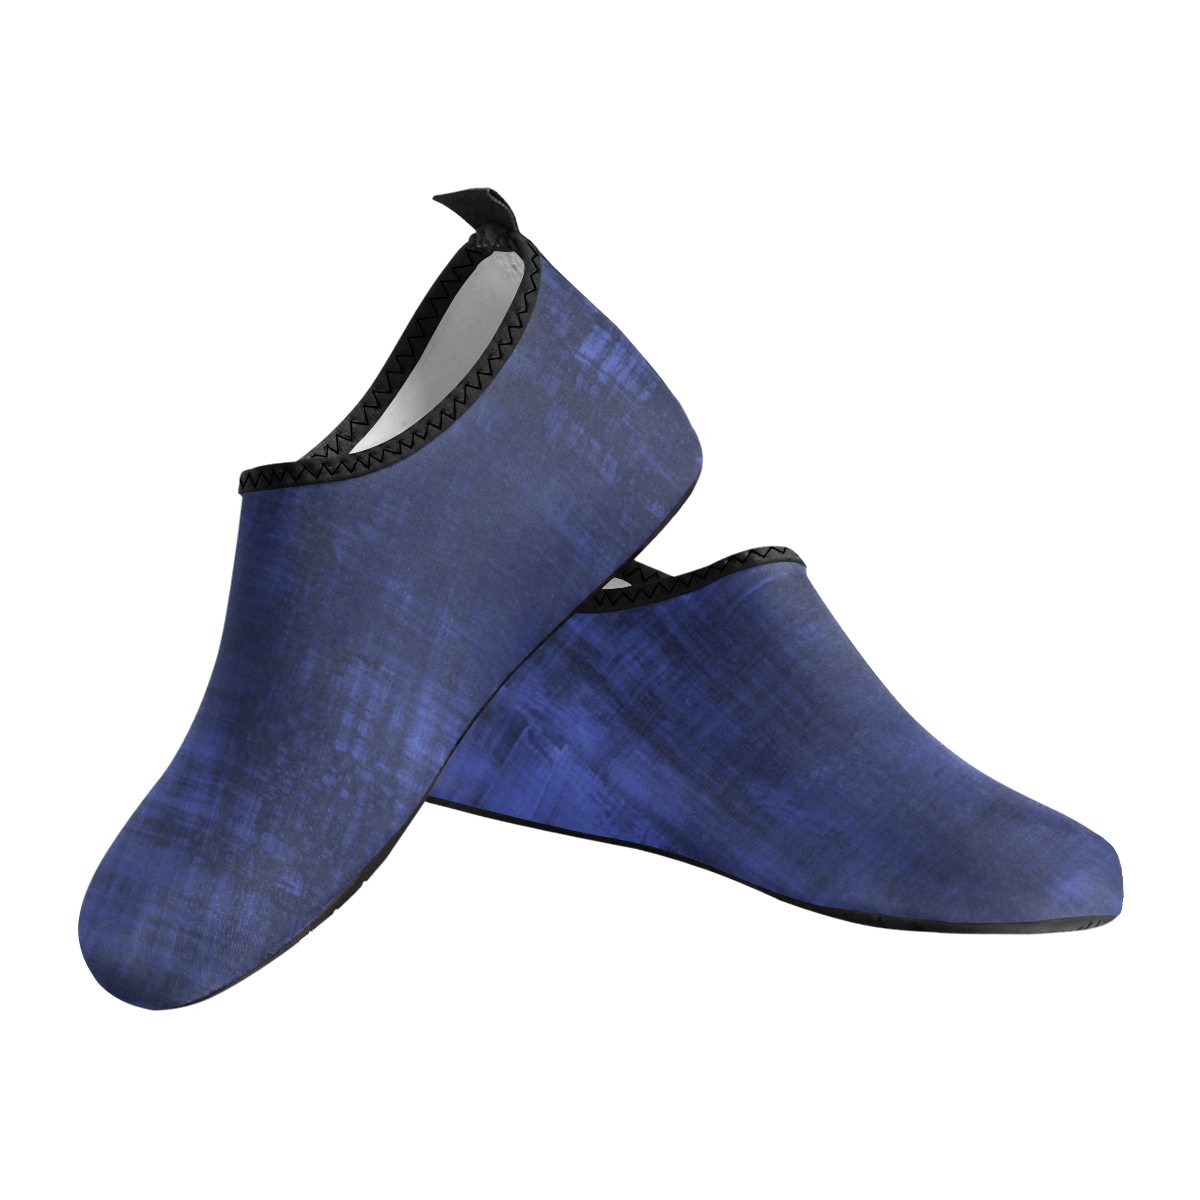 Blue Grunge Women's Slip-On Water Shoes (Model 056)